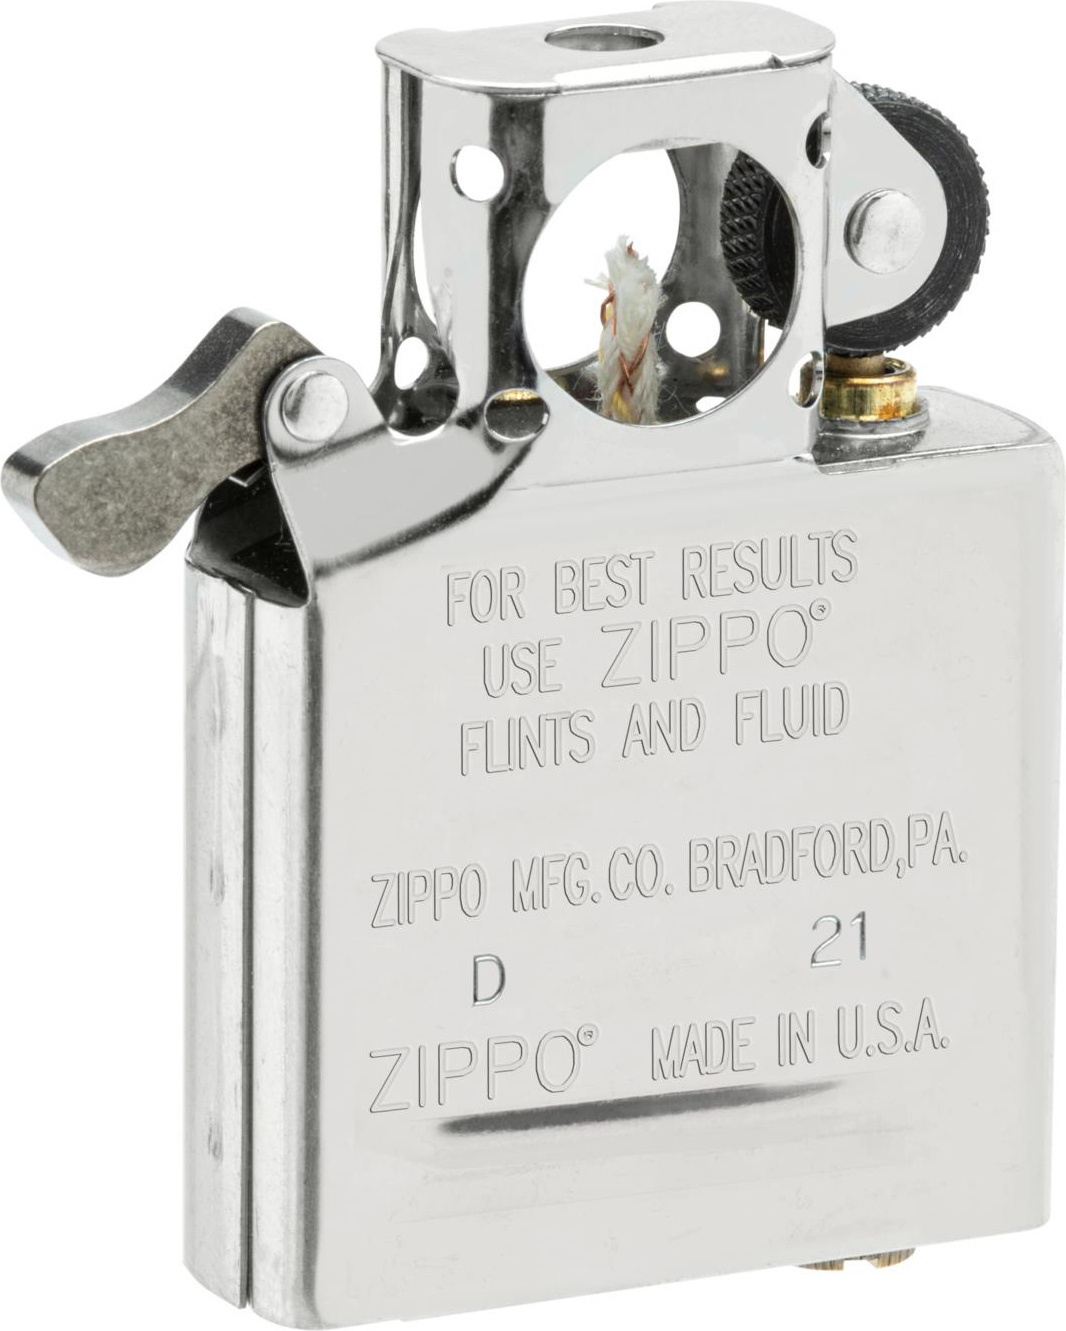 Zippo original usa